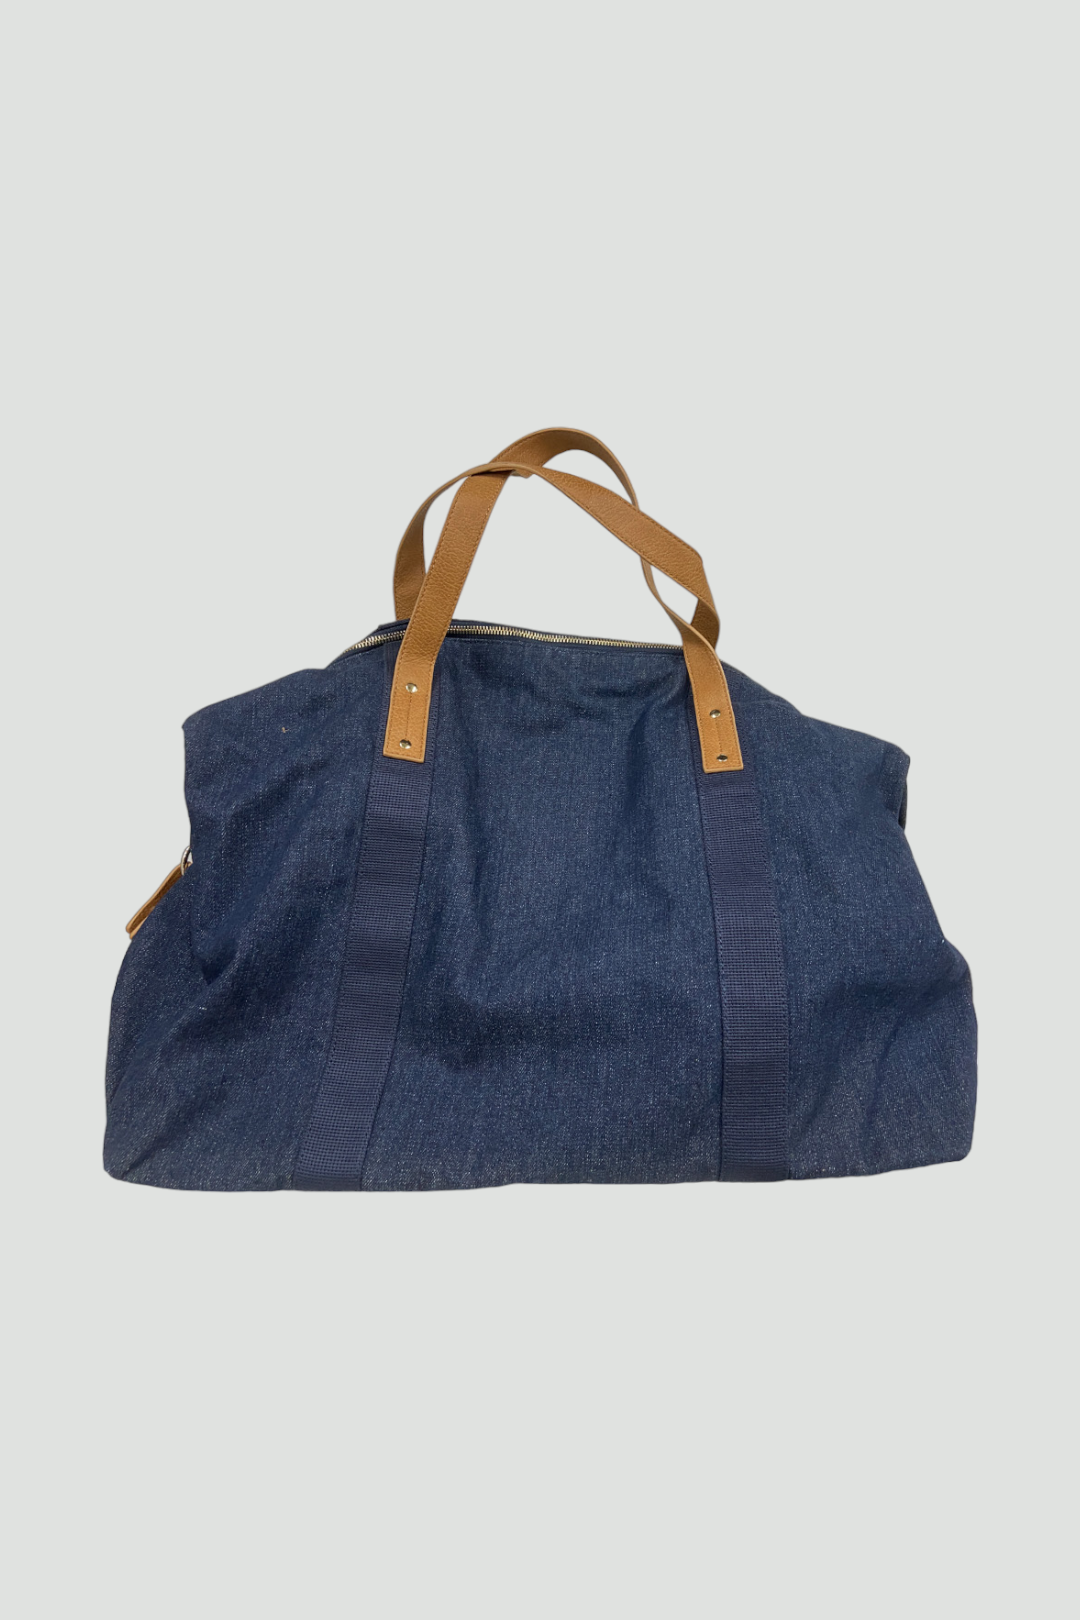 Country Road Denim Blue Weekender Bag